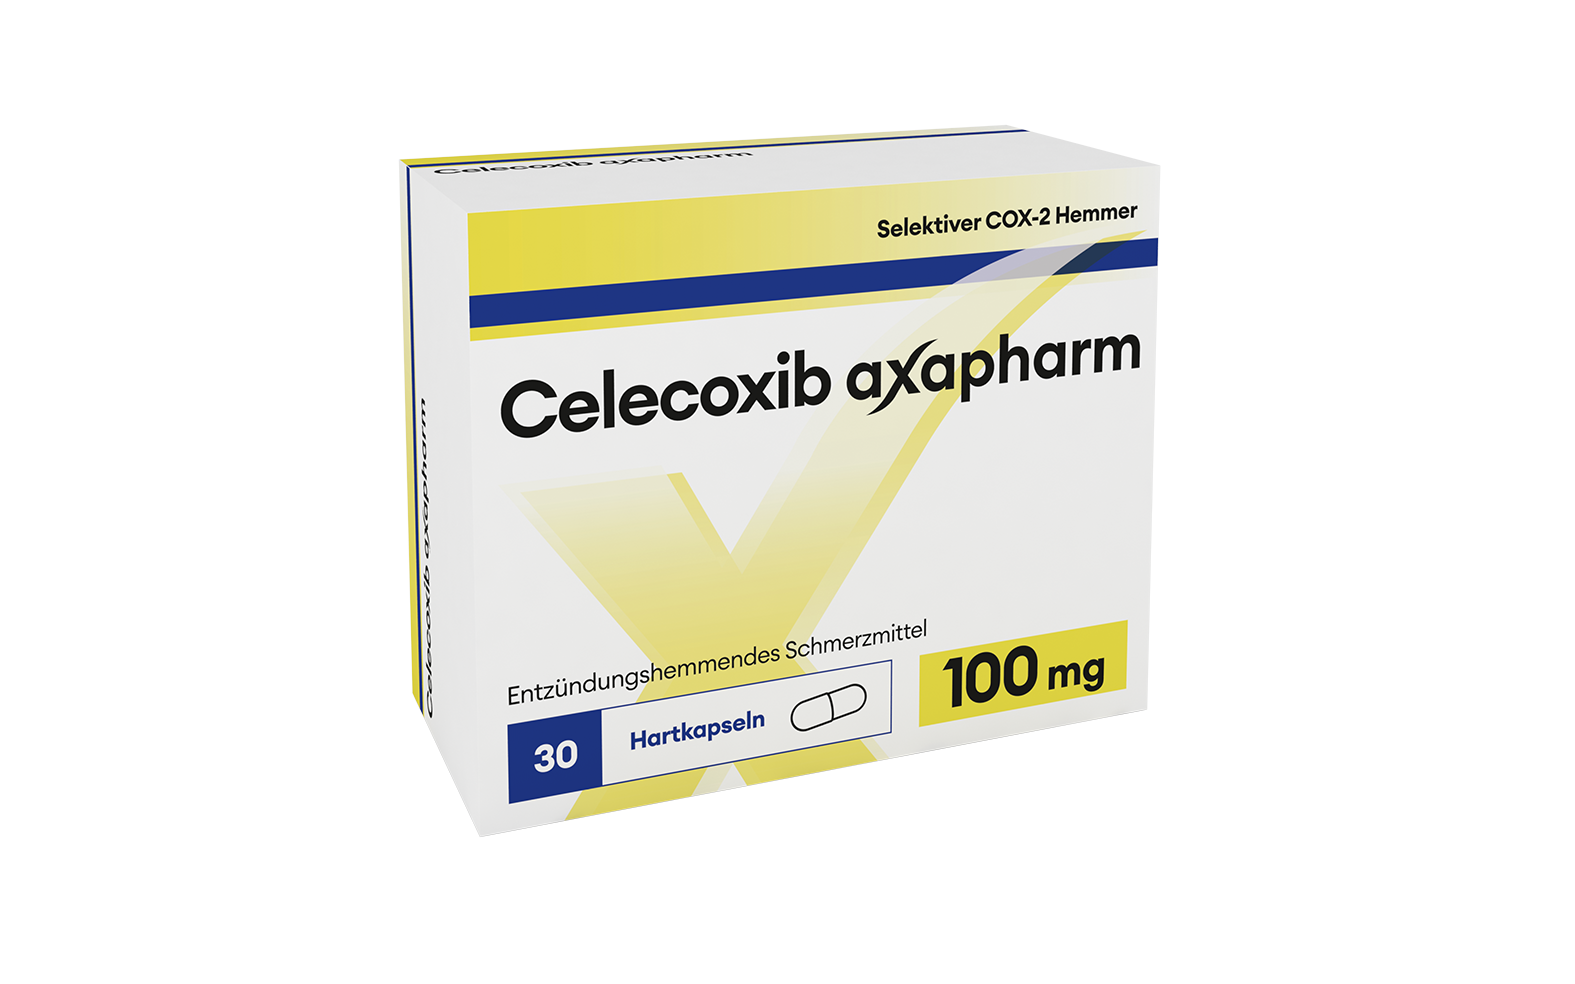 Celecoxib axapharm 100 mg axpharm ag